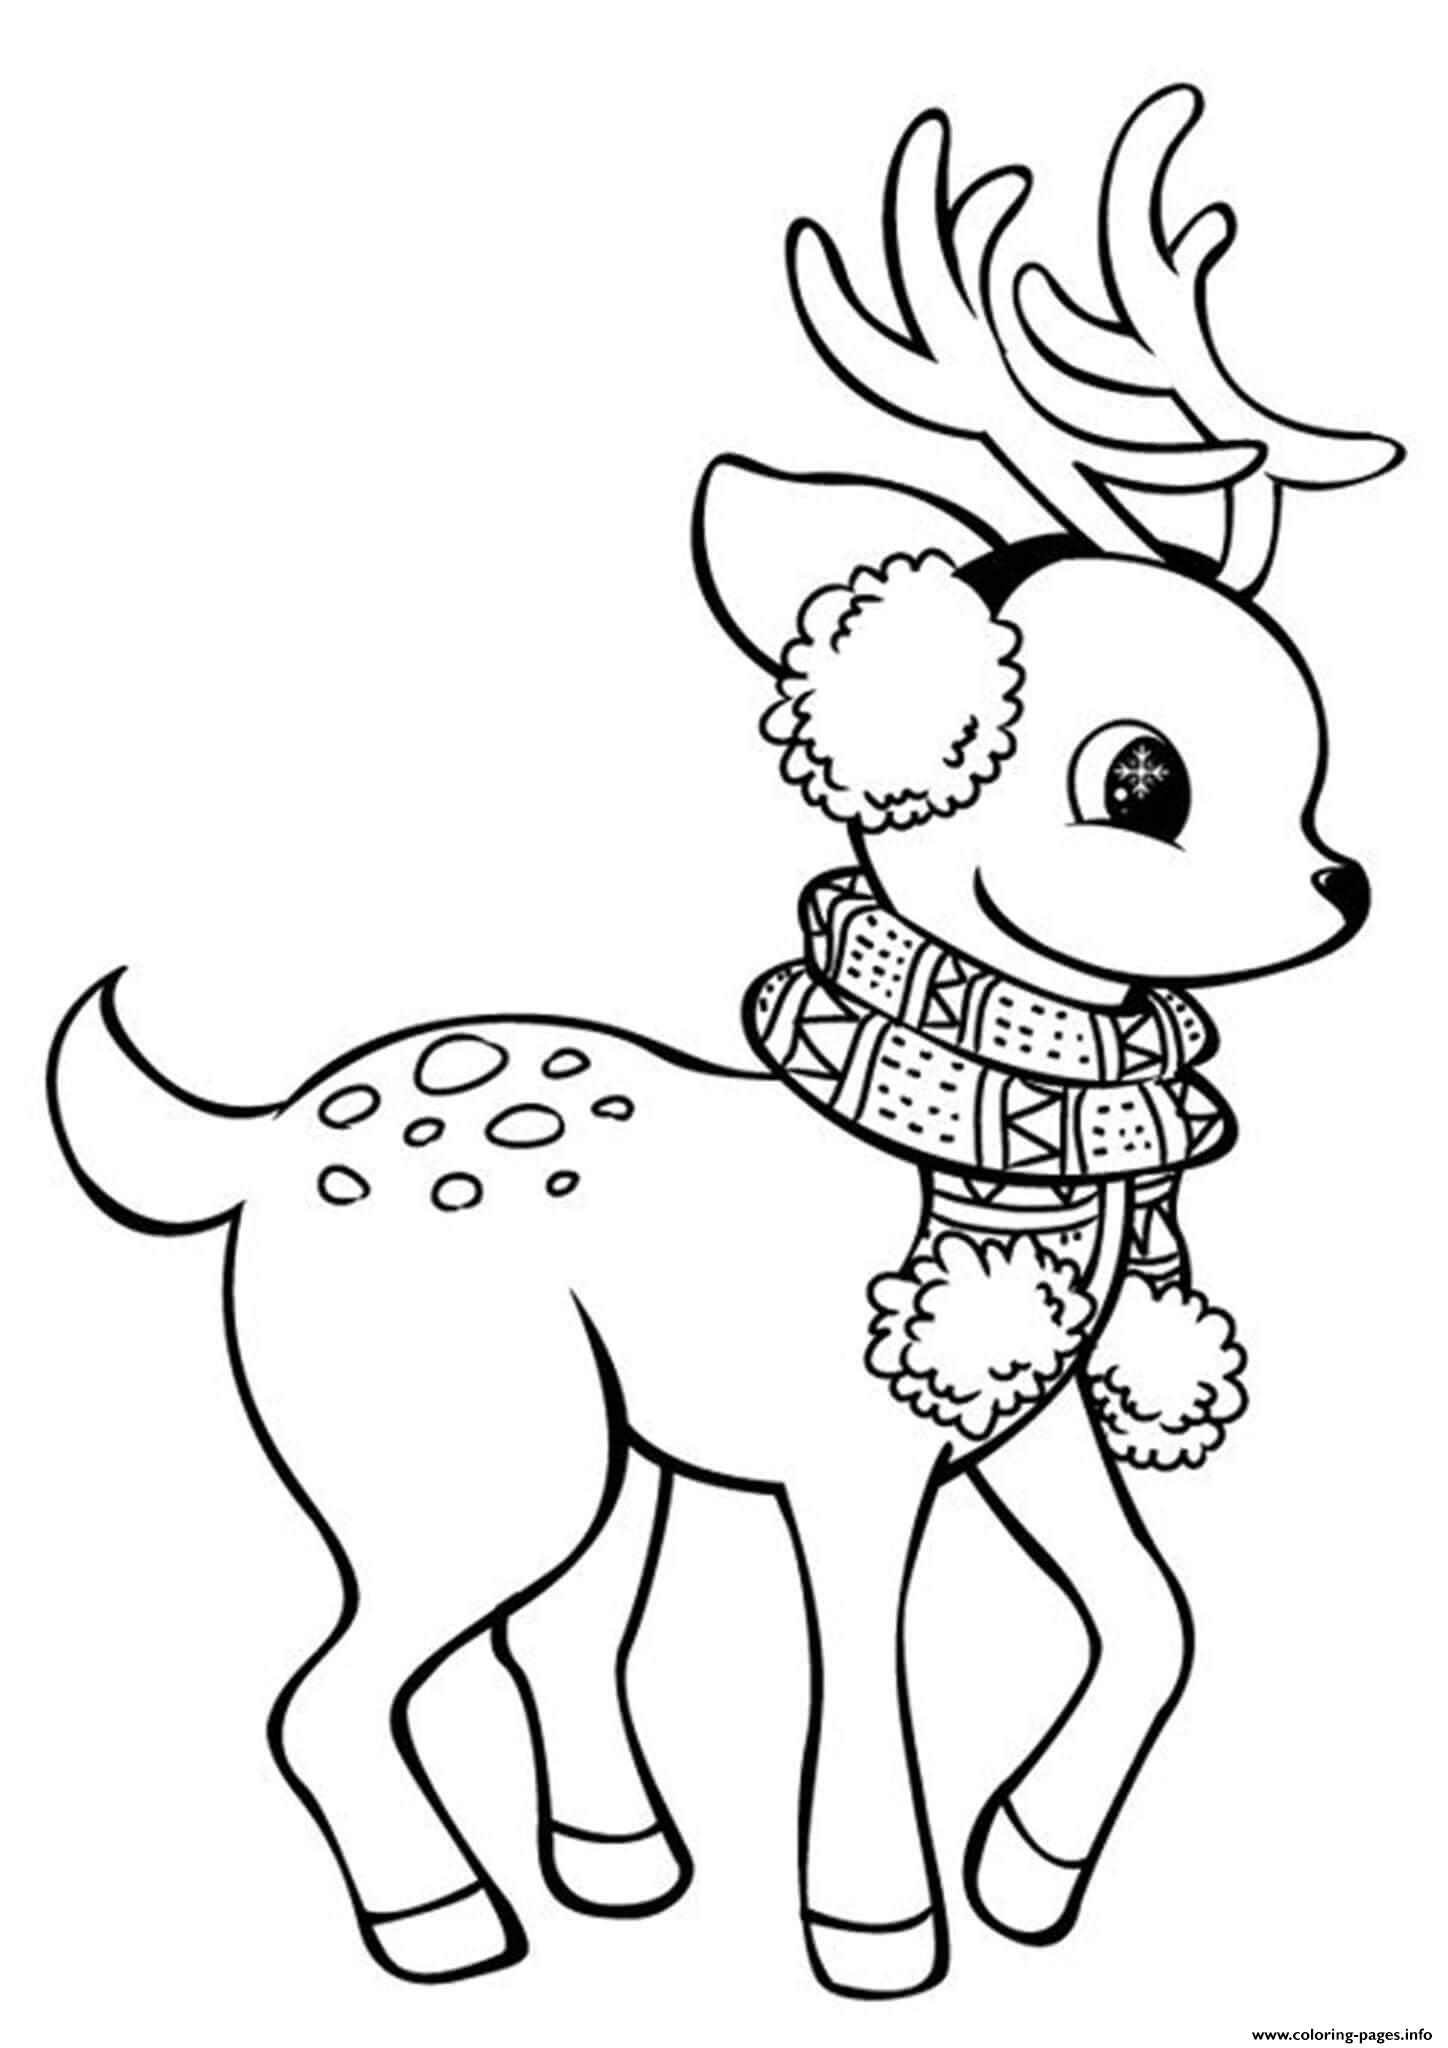 Cute Reindeer Kids Easy Christmas Coloring Pages Printable